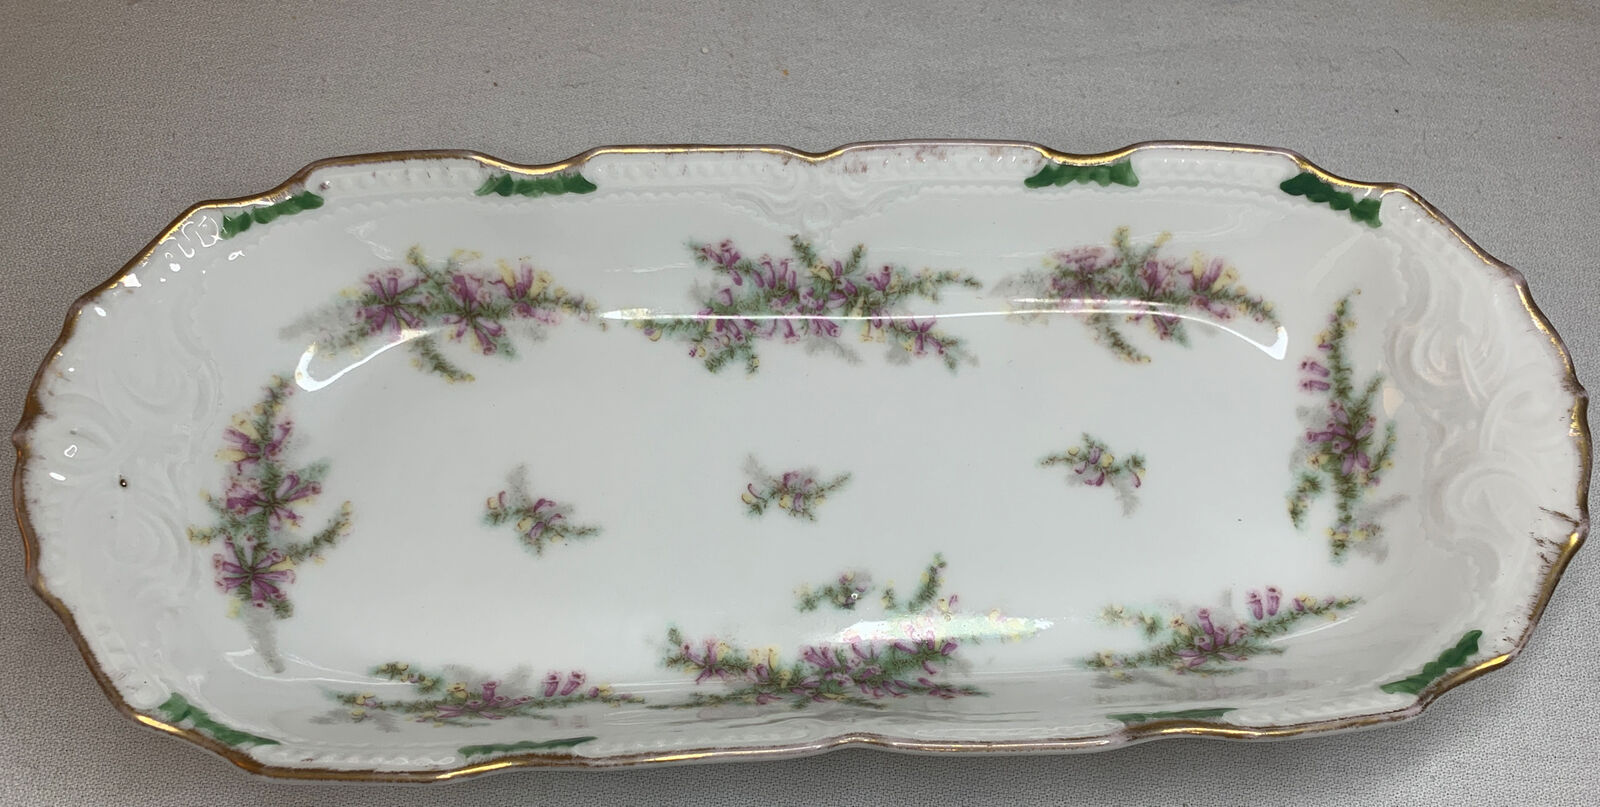 Vintage Limoges Antique France Hand Painted Porcelain Rectangular Serving Dish